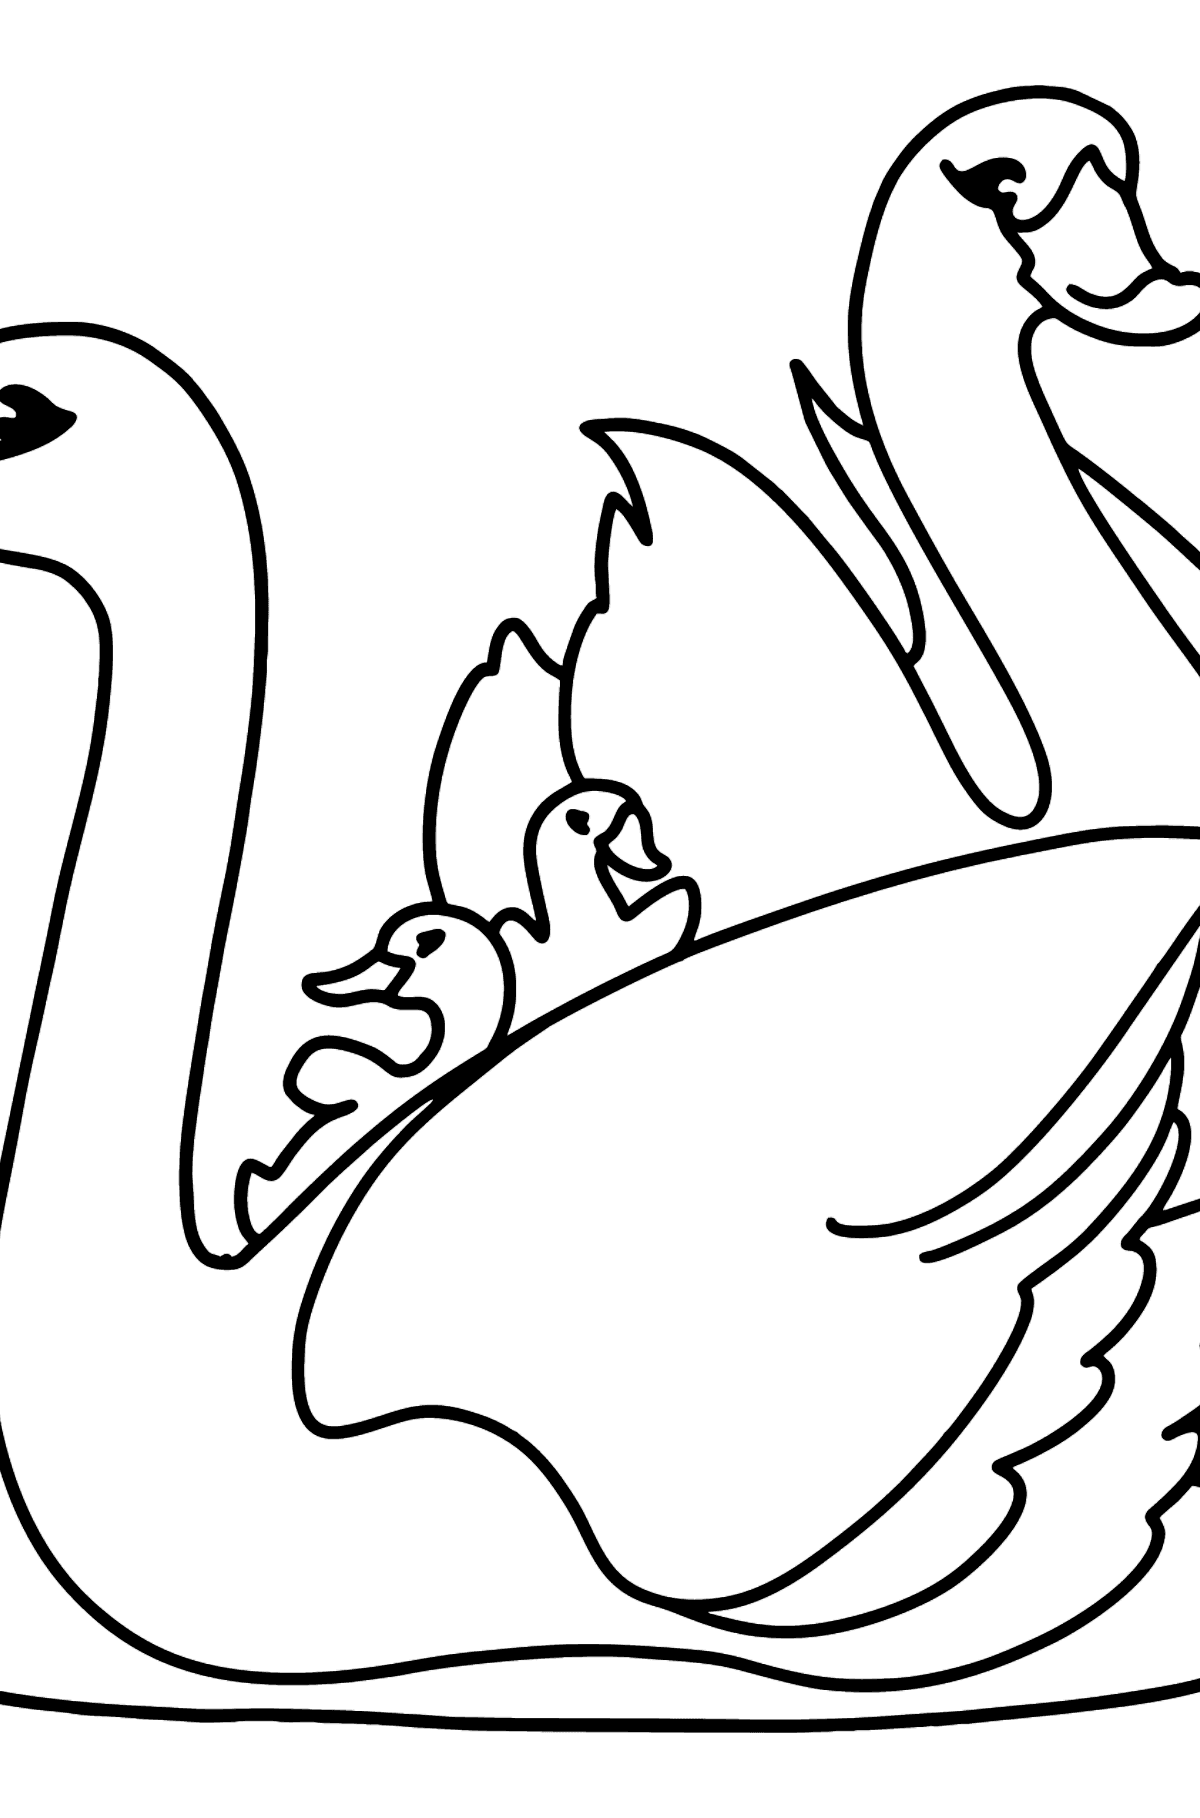 Beyaz kuğular boyama sayfası - Boyamalar çocuklar için